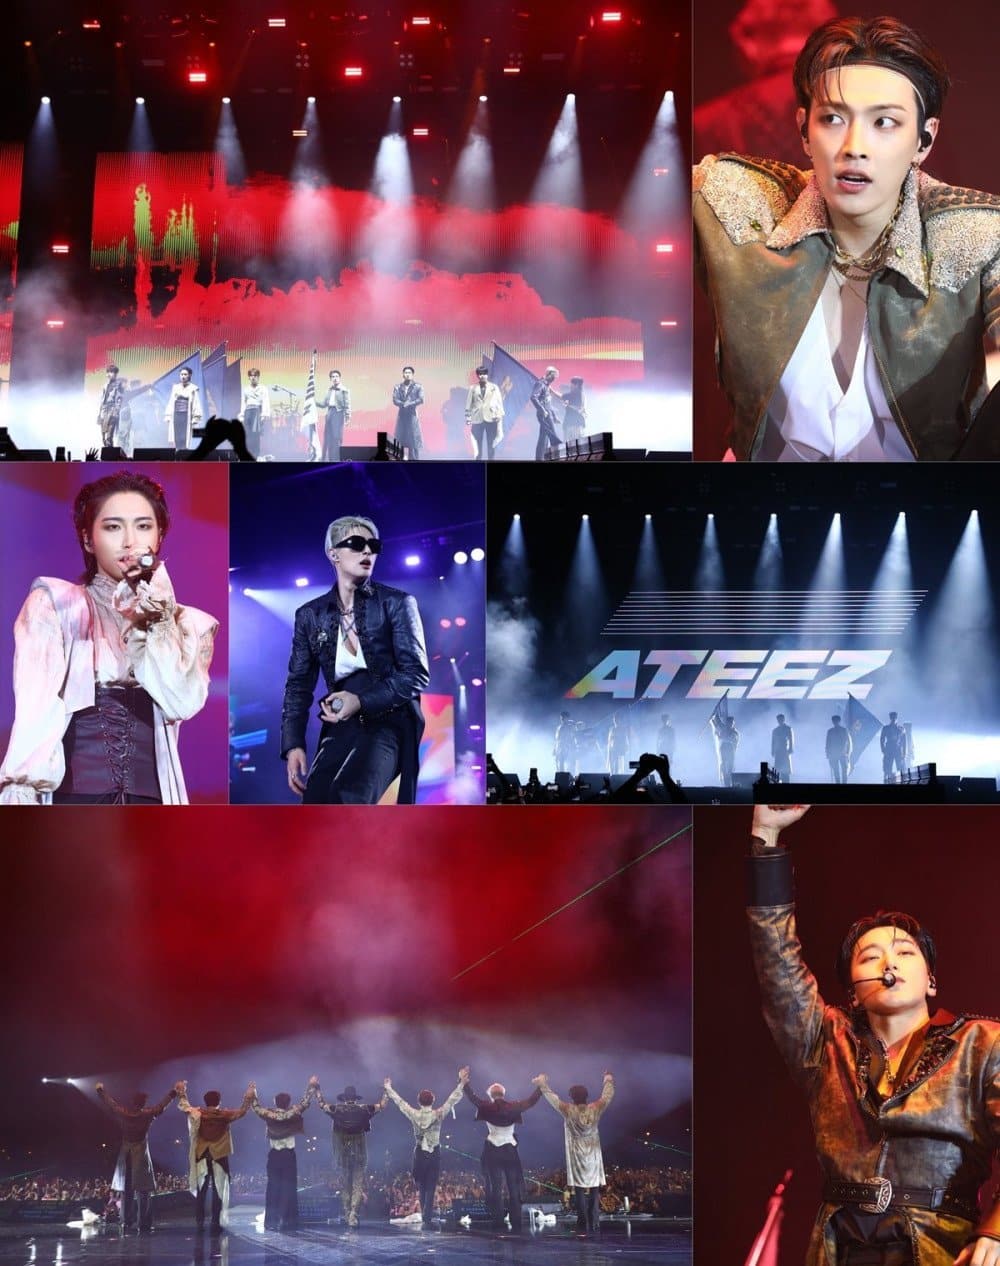 ATEEZ выступили на фестивале MAWAZINE в Марокко и вошли в историю, став его первыми K-pop хедлайнерами